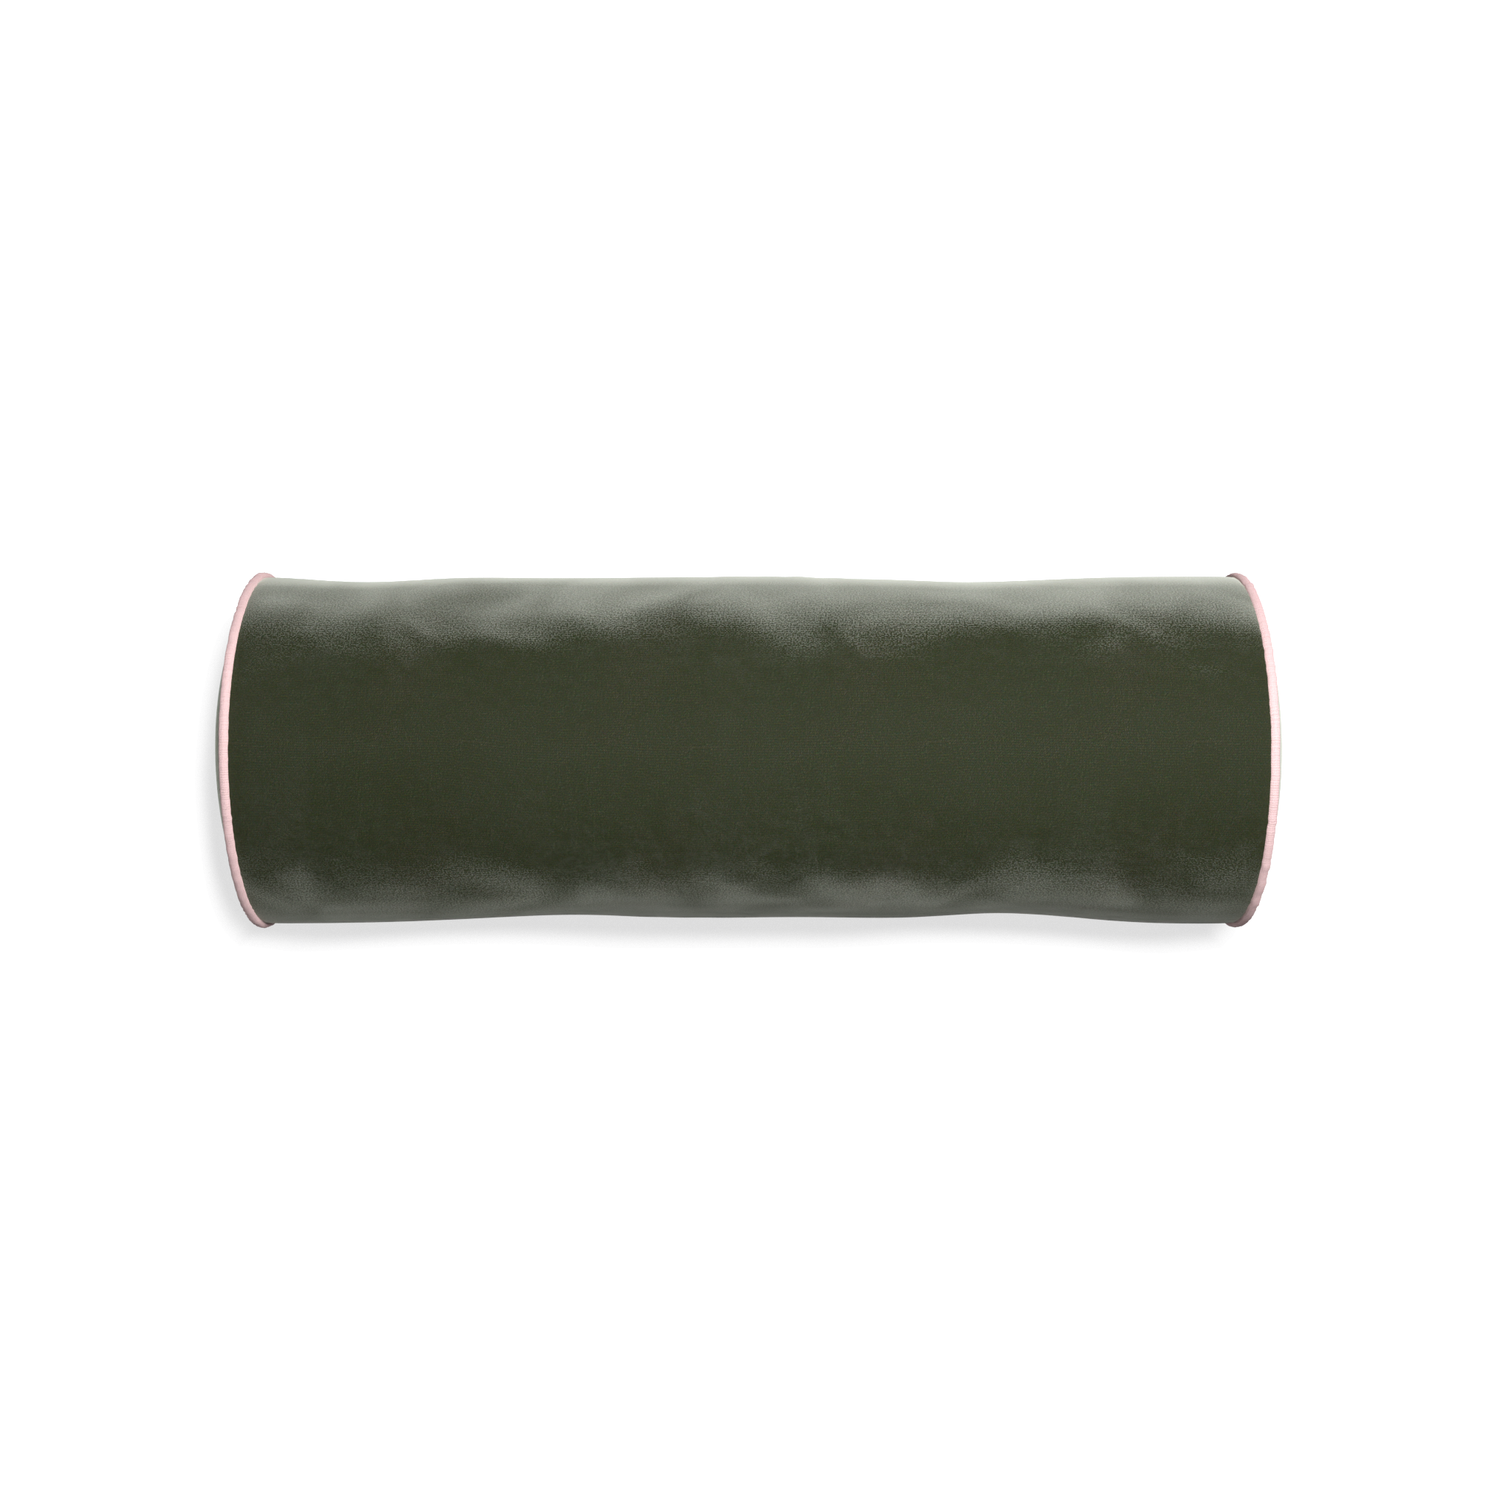 bolster fern green velvet pillow with light pink piping